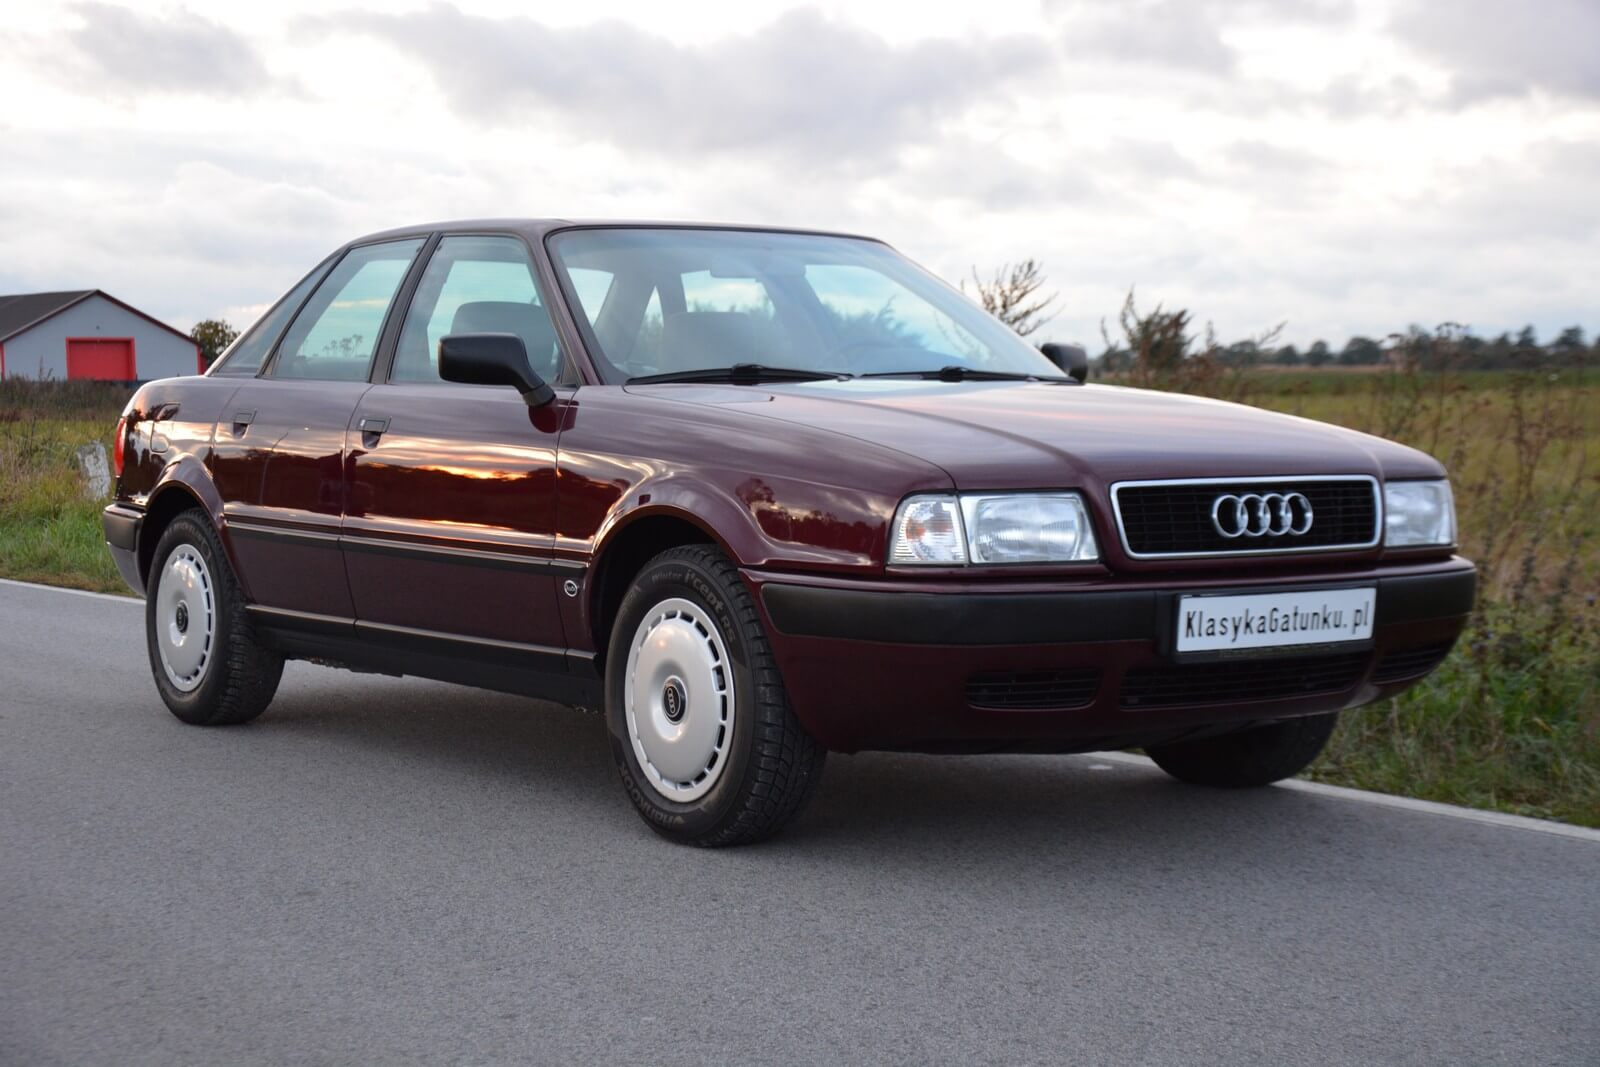 Купить ауди 80 б4 в беларуси. Audi 80 b4. Audi 80 b4 1994. Ауди 80 в4. Audi 80 IV.